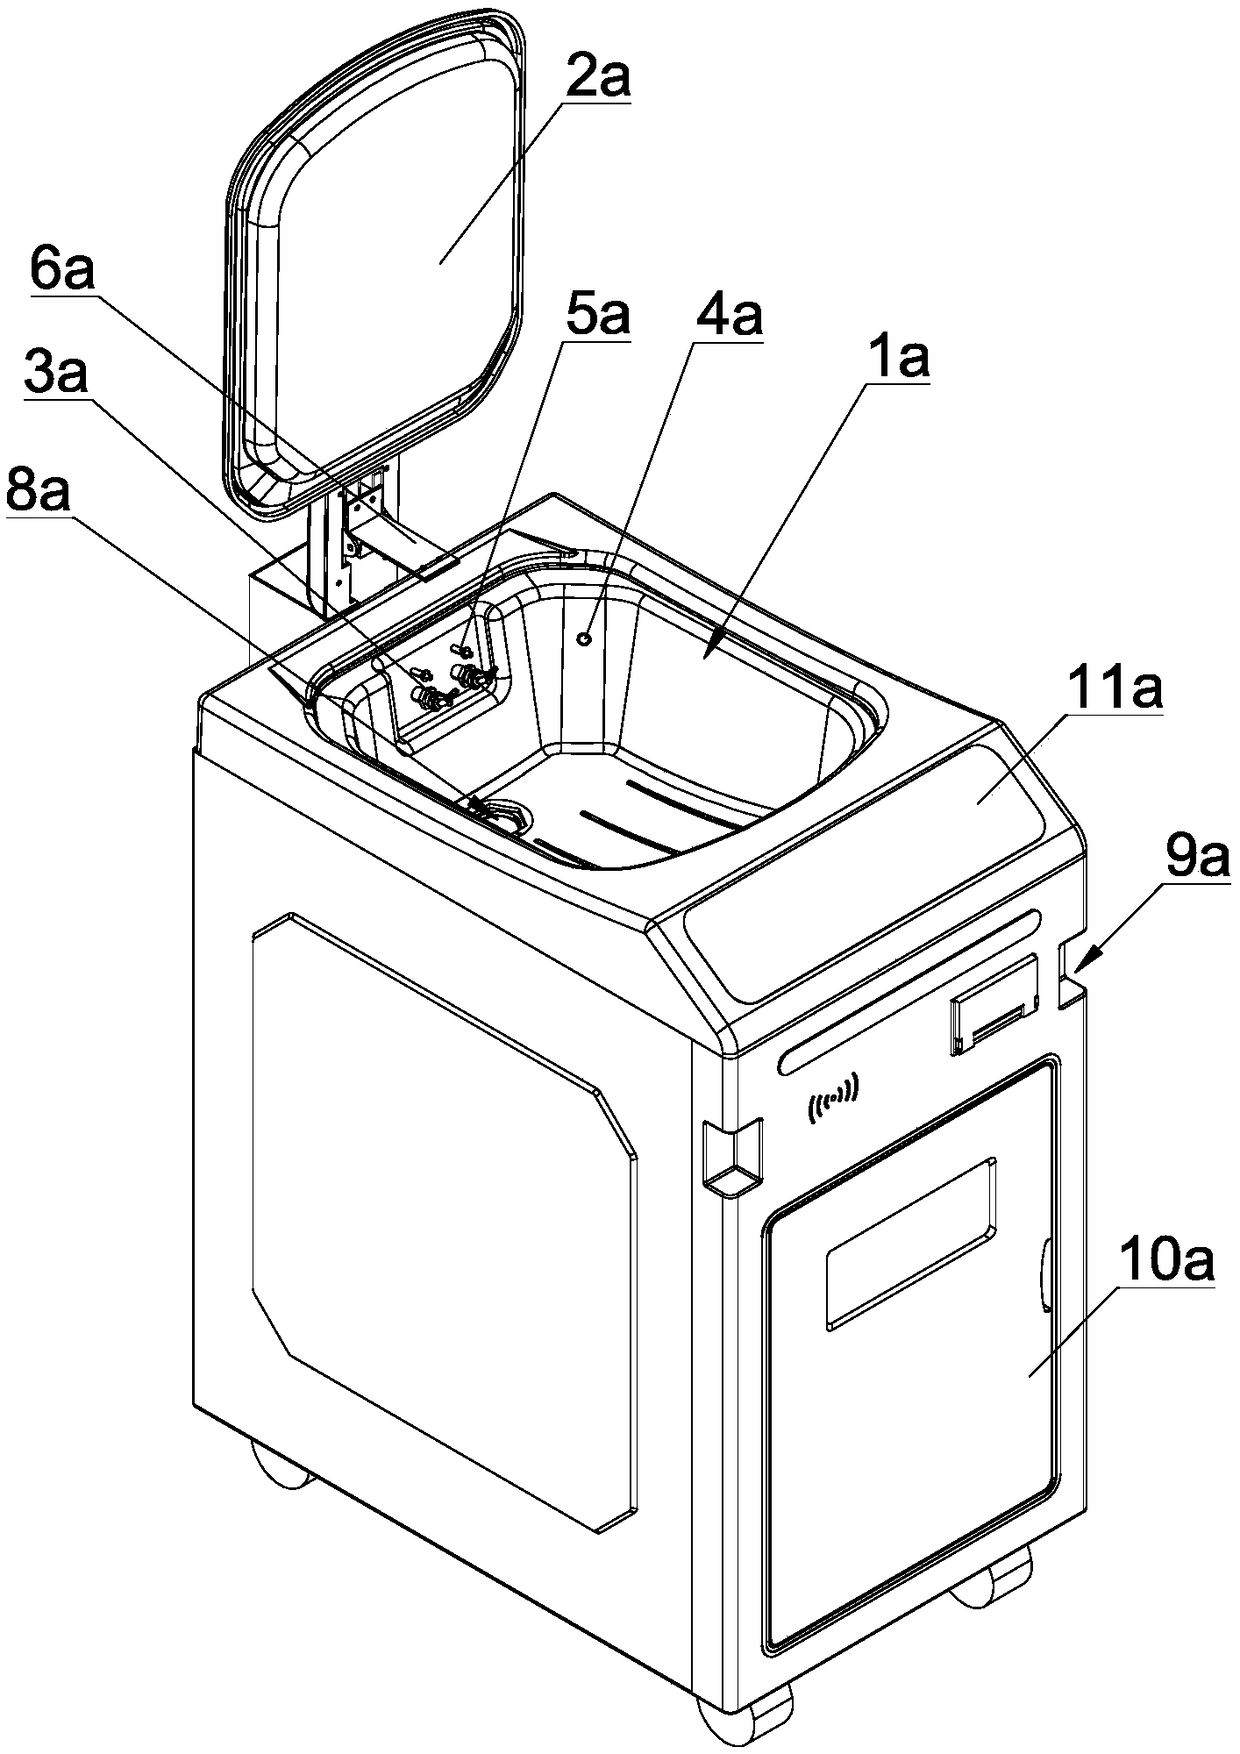 Full-soaking type endoscope washing machine